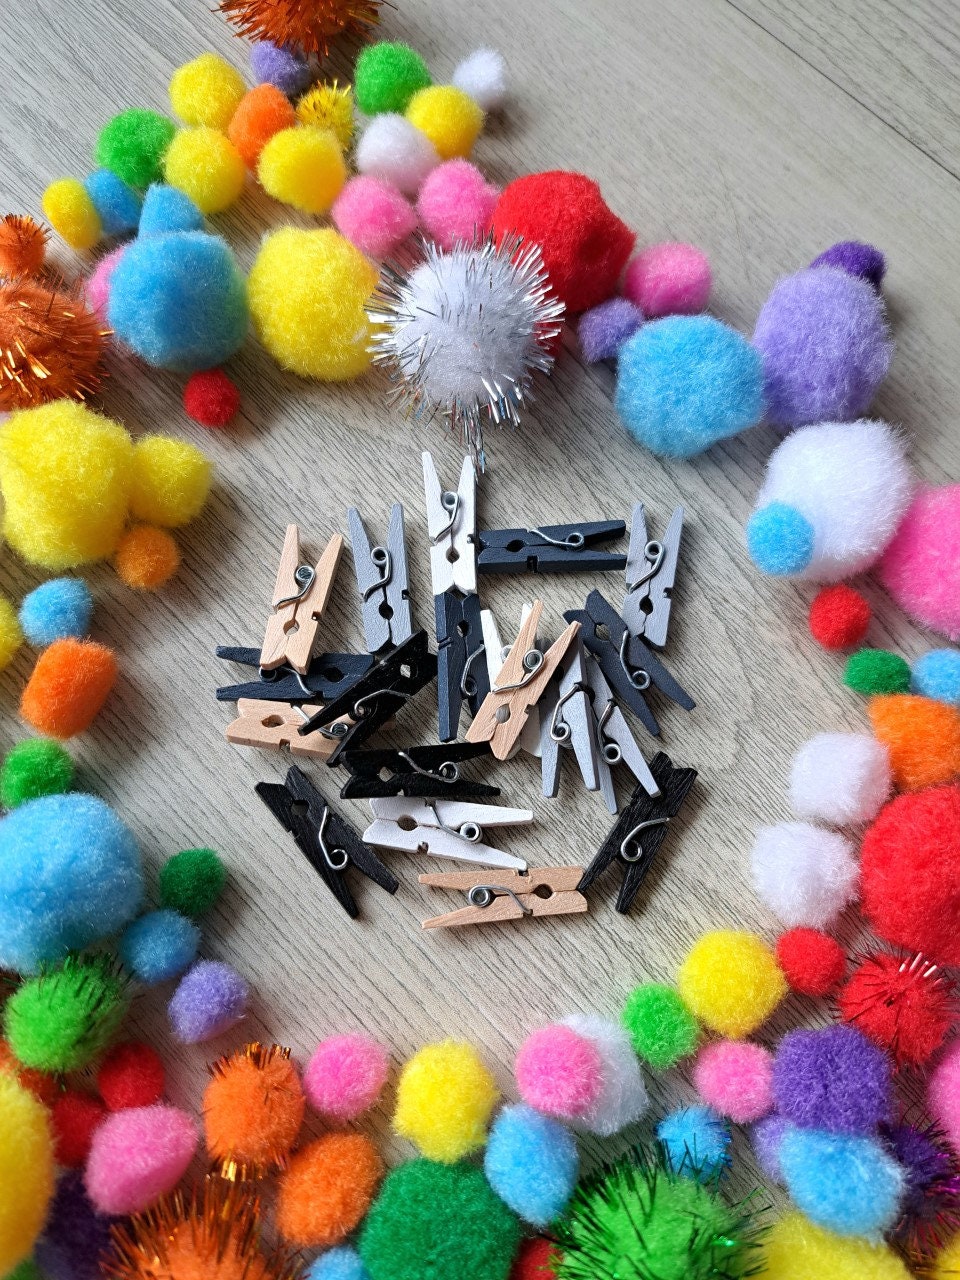 Tiny Clothespins Small Clothes Pins Mini Clothespins, Natural Wood  Clothespins, Mini Wooden Clothes Pins, Rustic Wedding Decorations, 